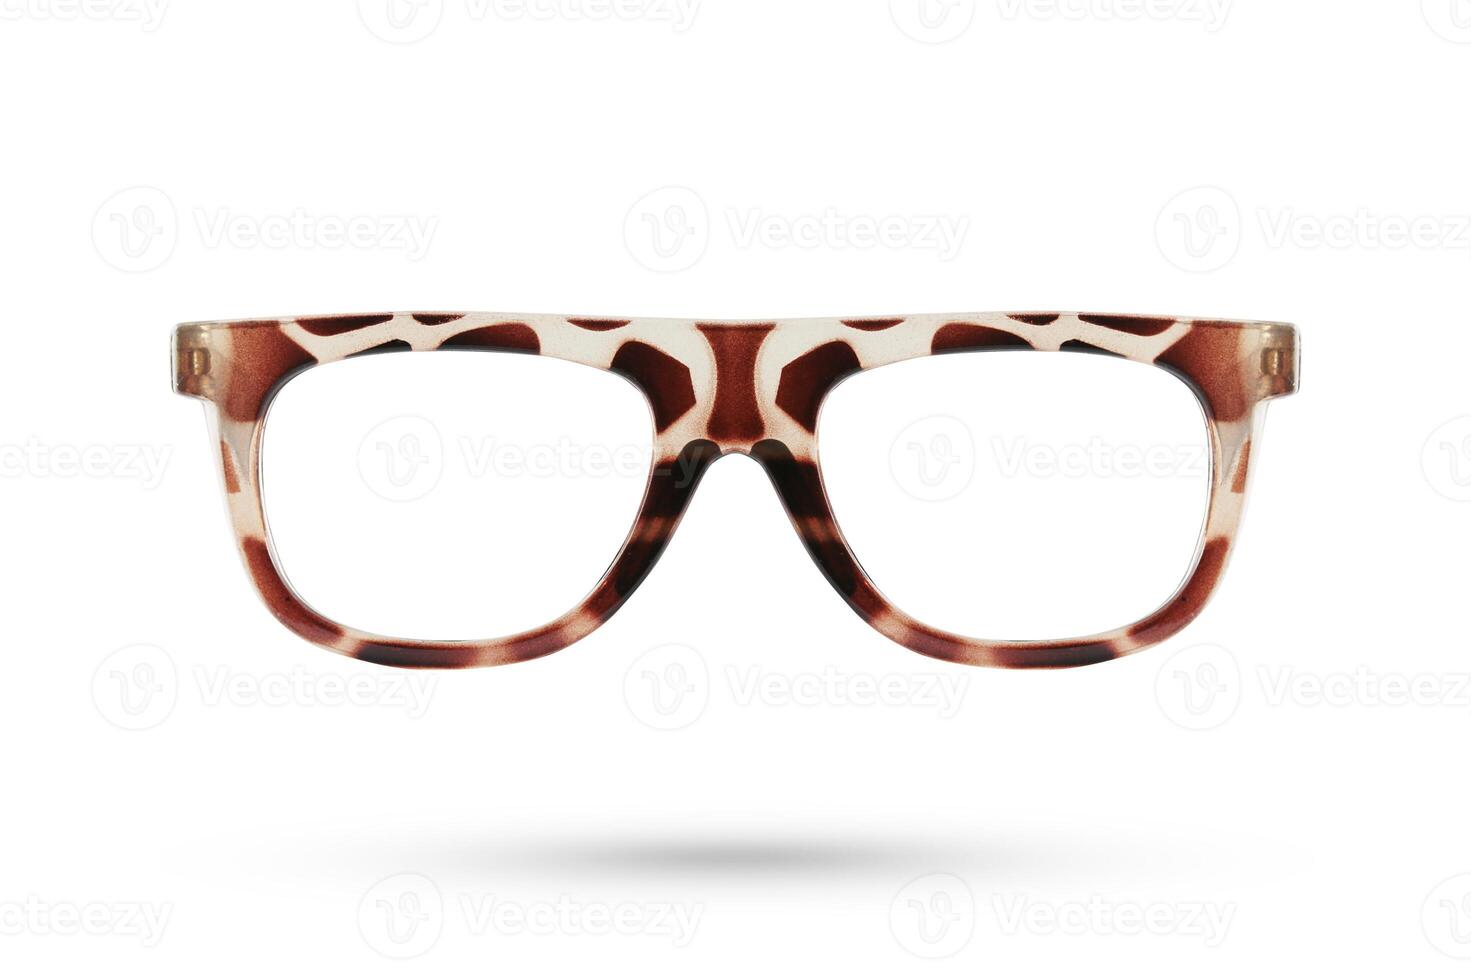 Fashion glasses style plastic-framed isolated on white background. photo